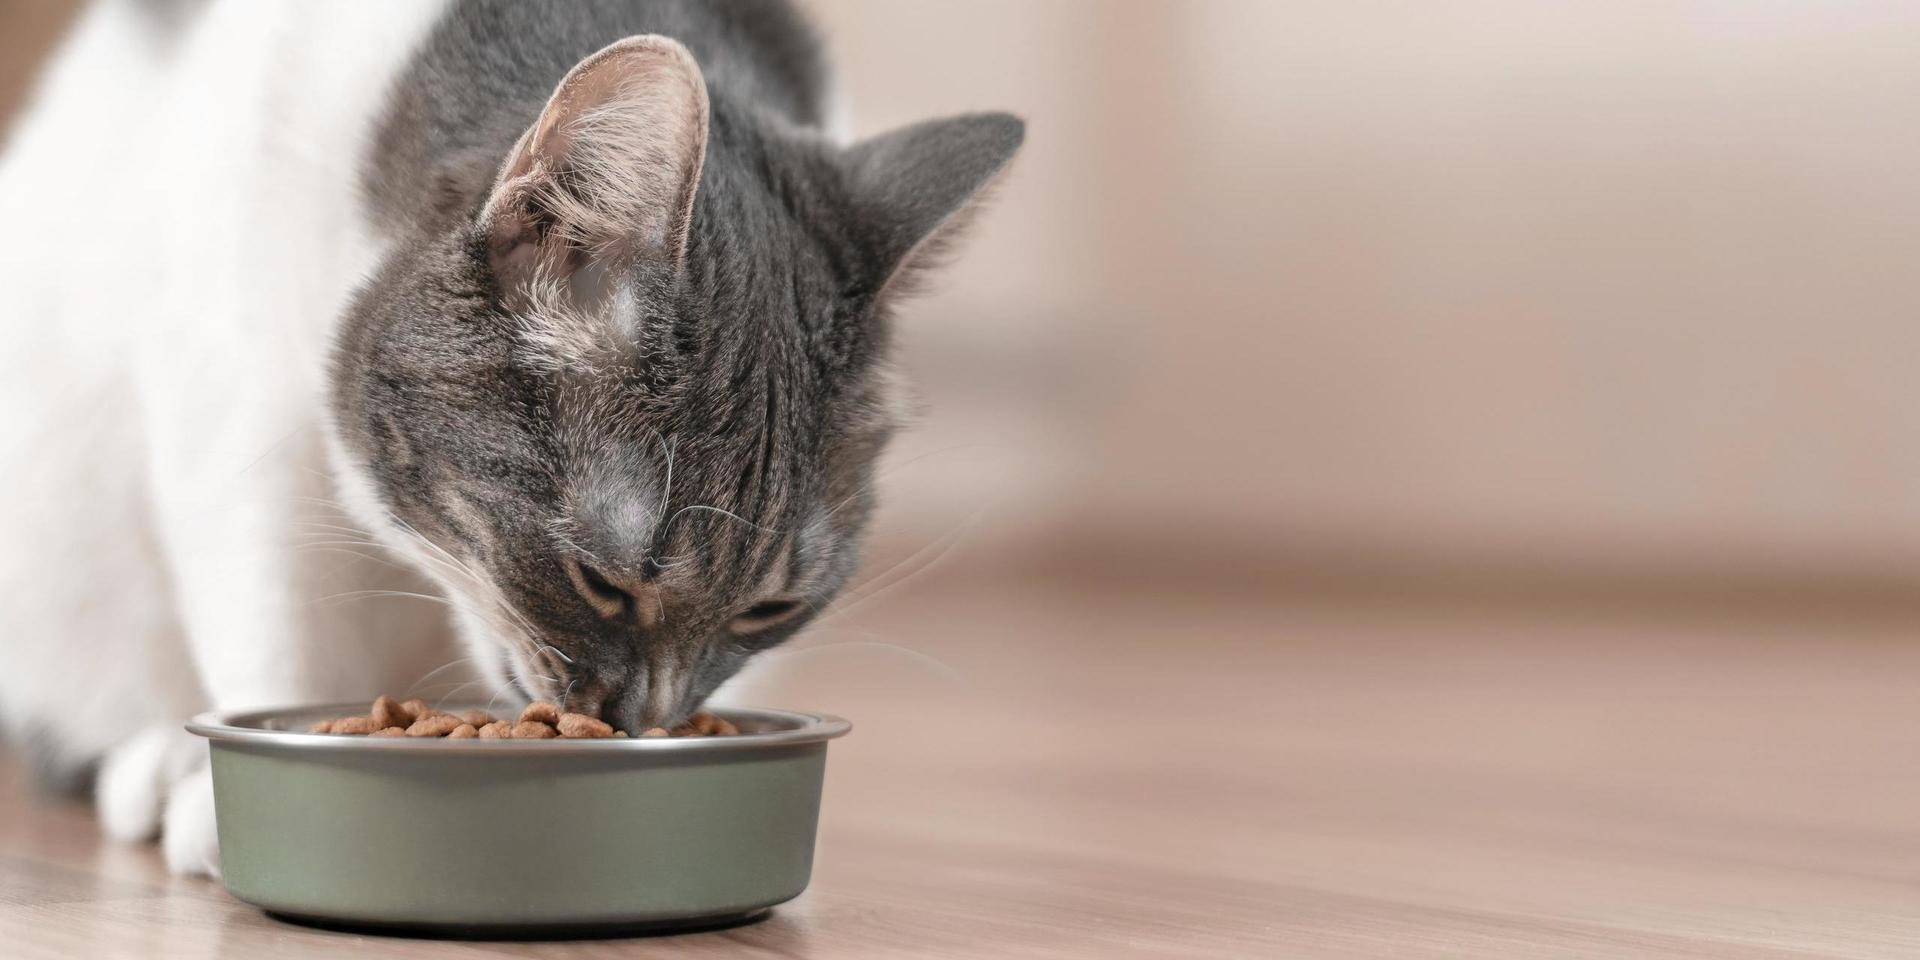 – Kolhydratrika foder kan öka risken för övervikt, så jag ser ingen anledning att ge foder med höga kolhydratmängder, säger Ninni Rothlin Zachrisson på Sveriges lantbruksuniversitet, doktorand inom ämnet kattdiabetes.